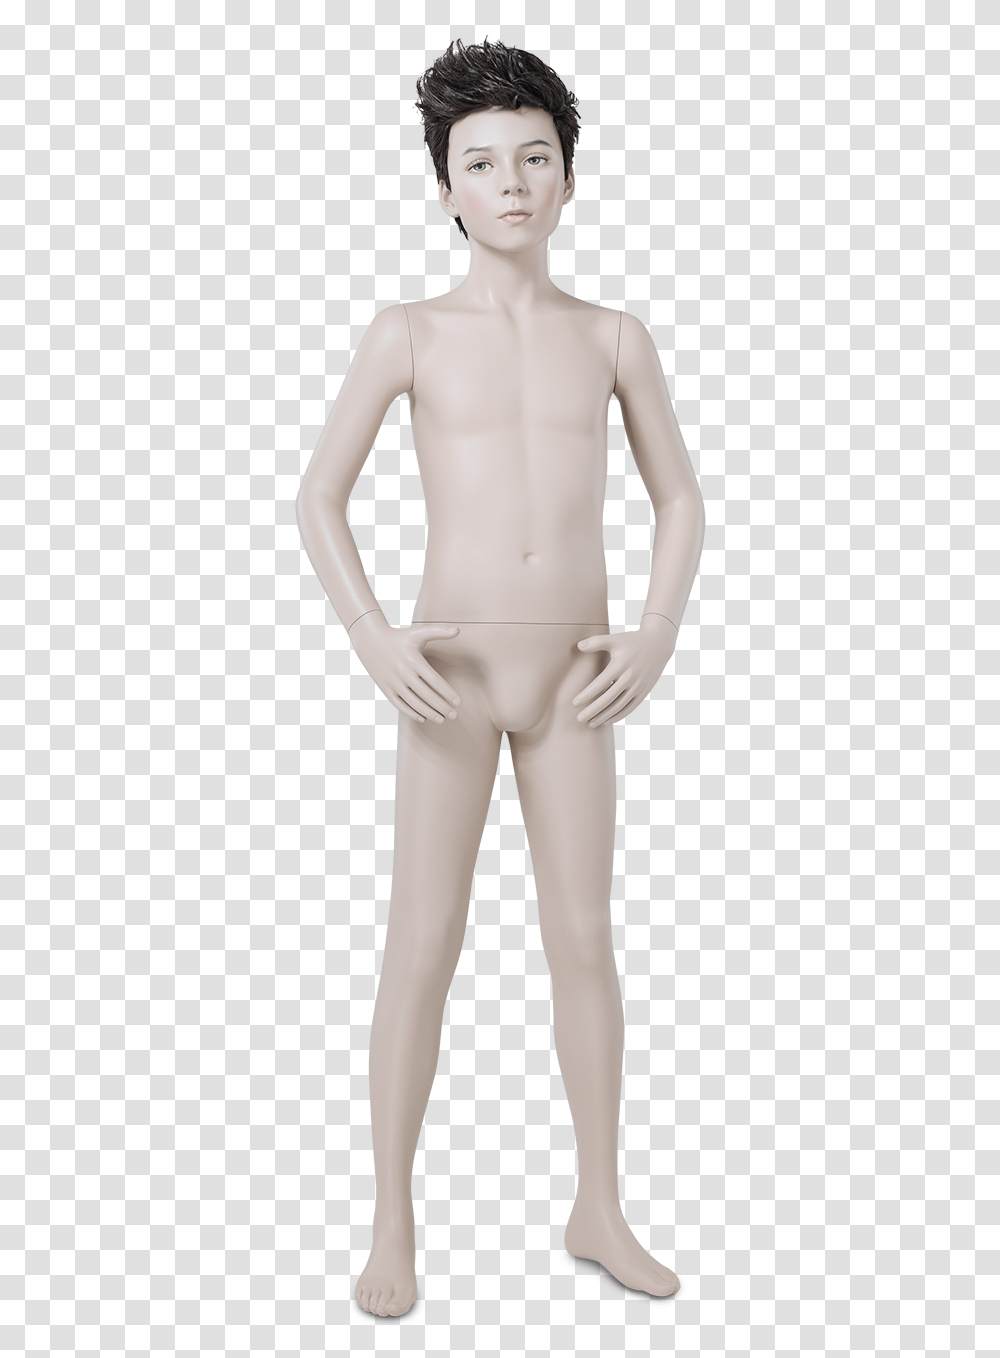 Realistic Child Mannequins Mannequin, Person, Human, Plot, Torso Transparent Png